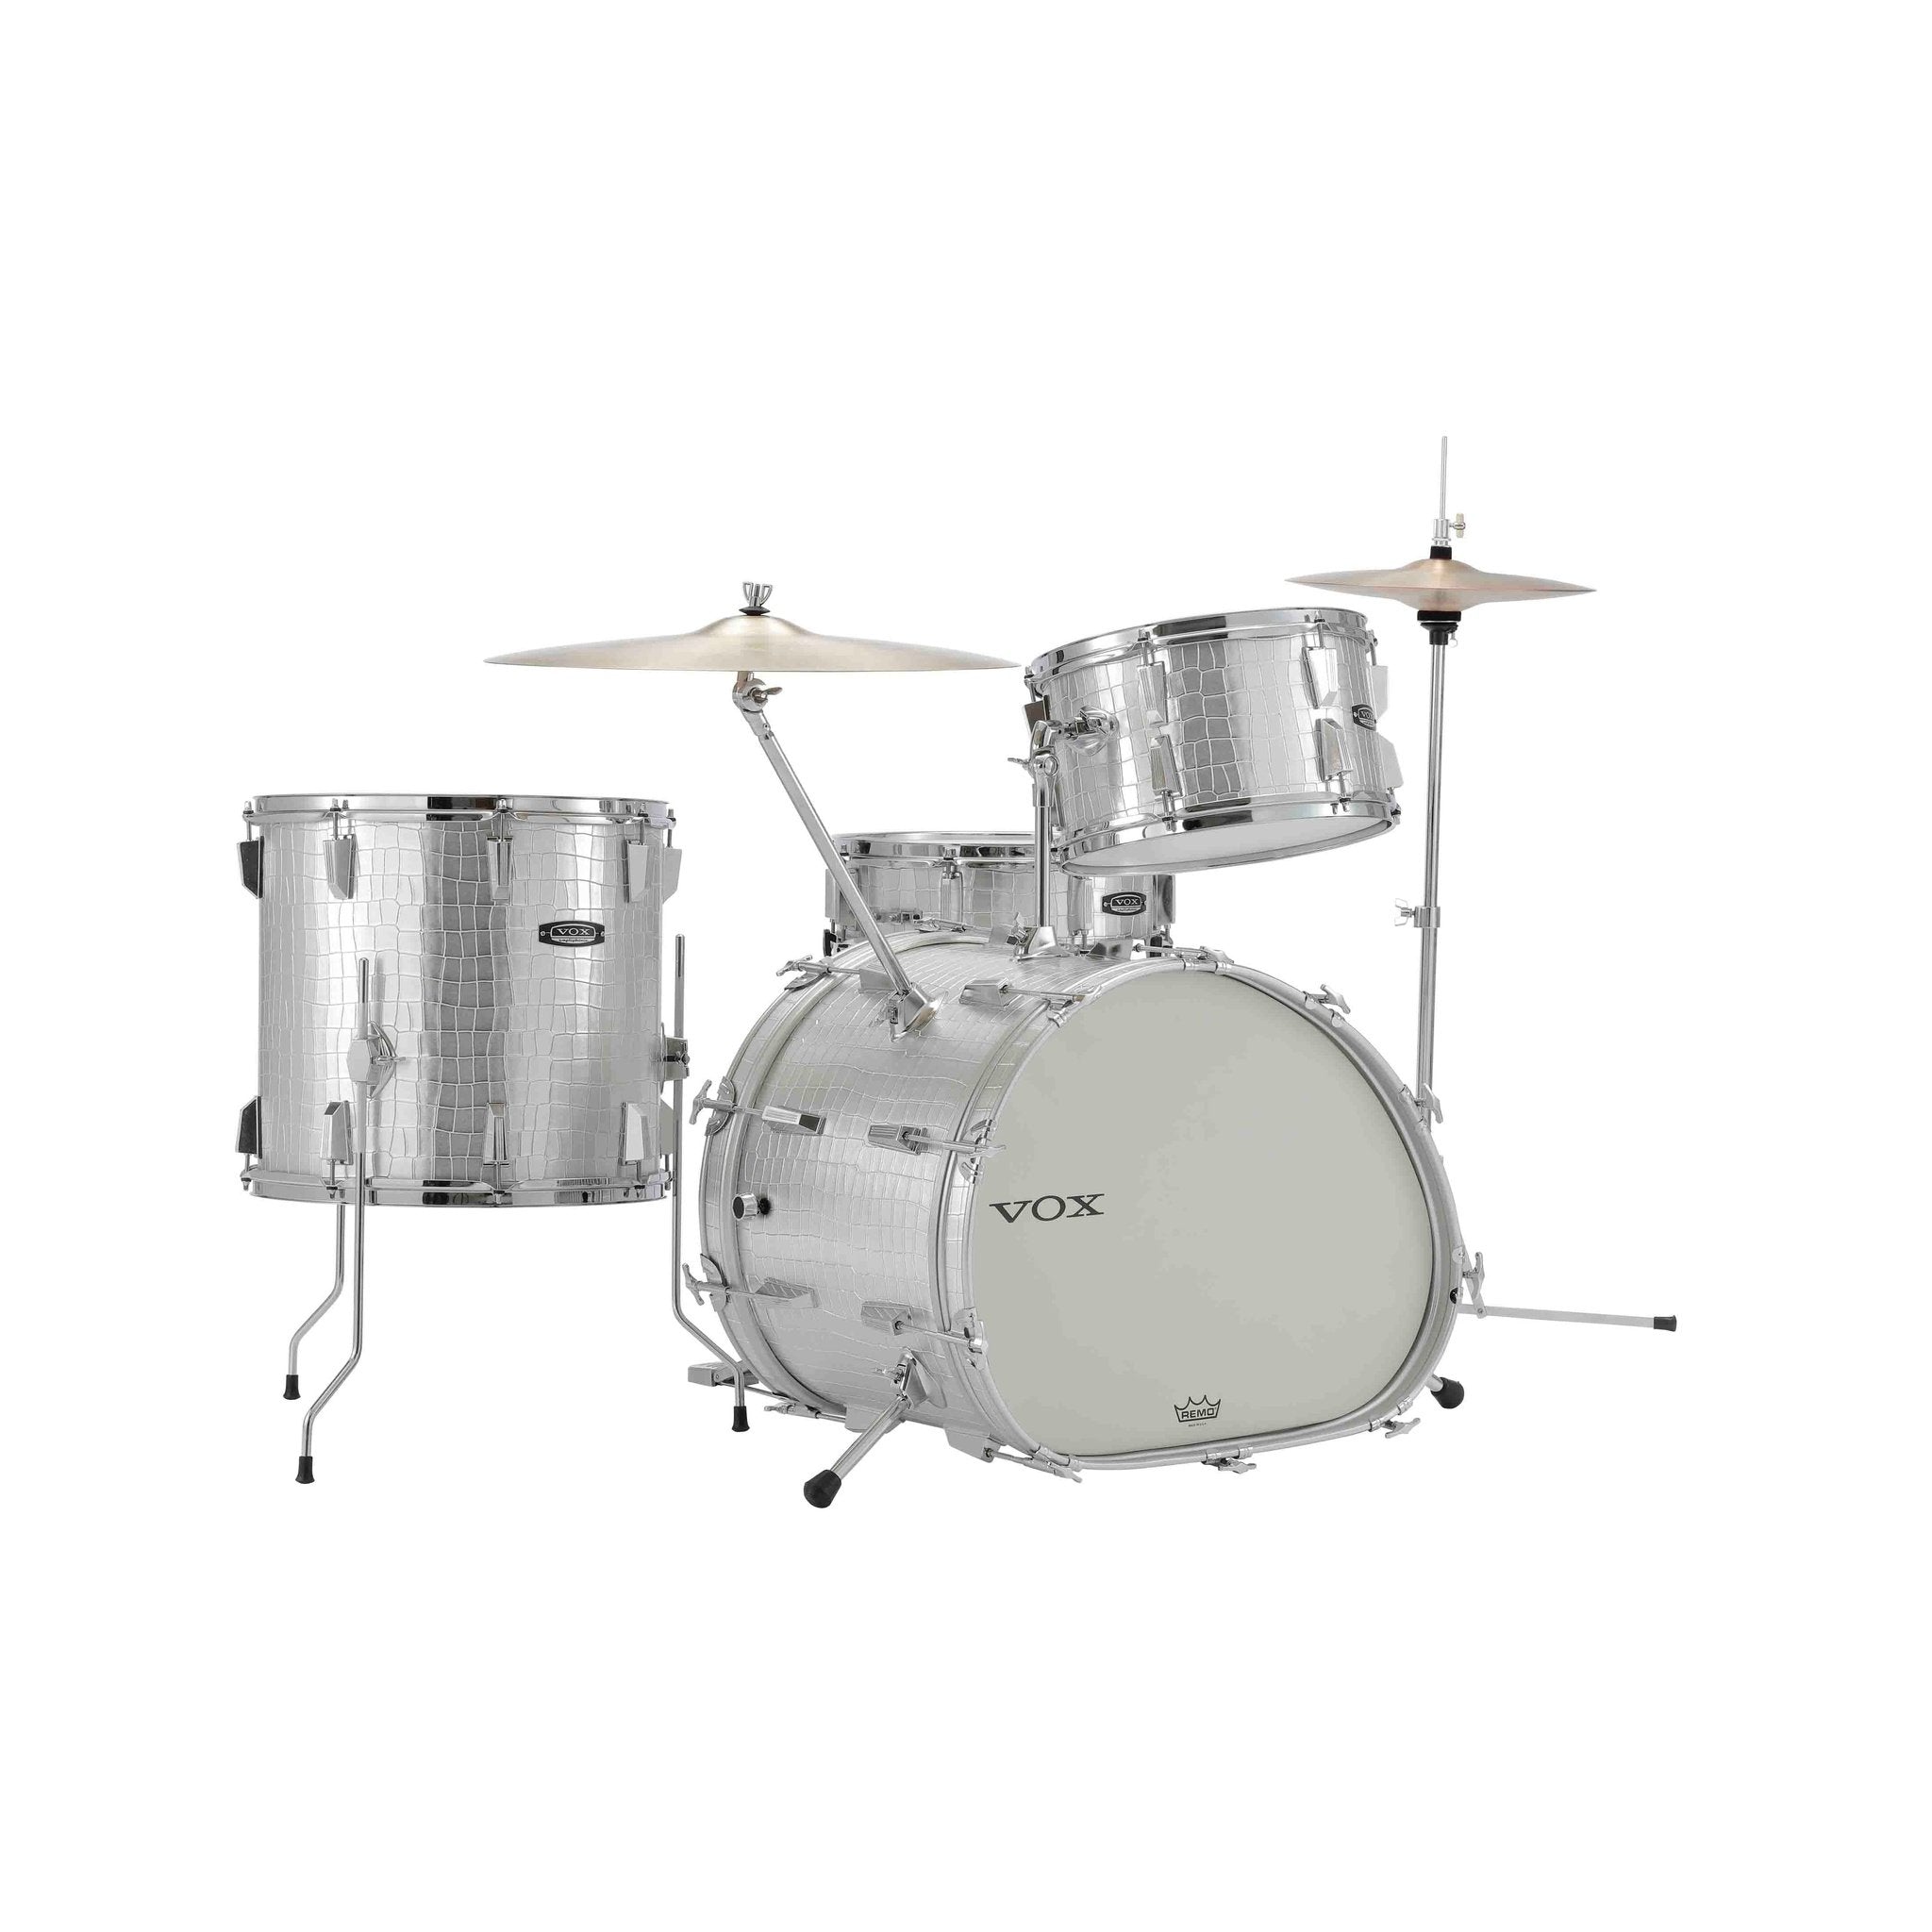 Vox Telstar Drum Kit 3